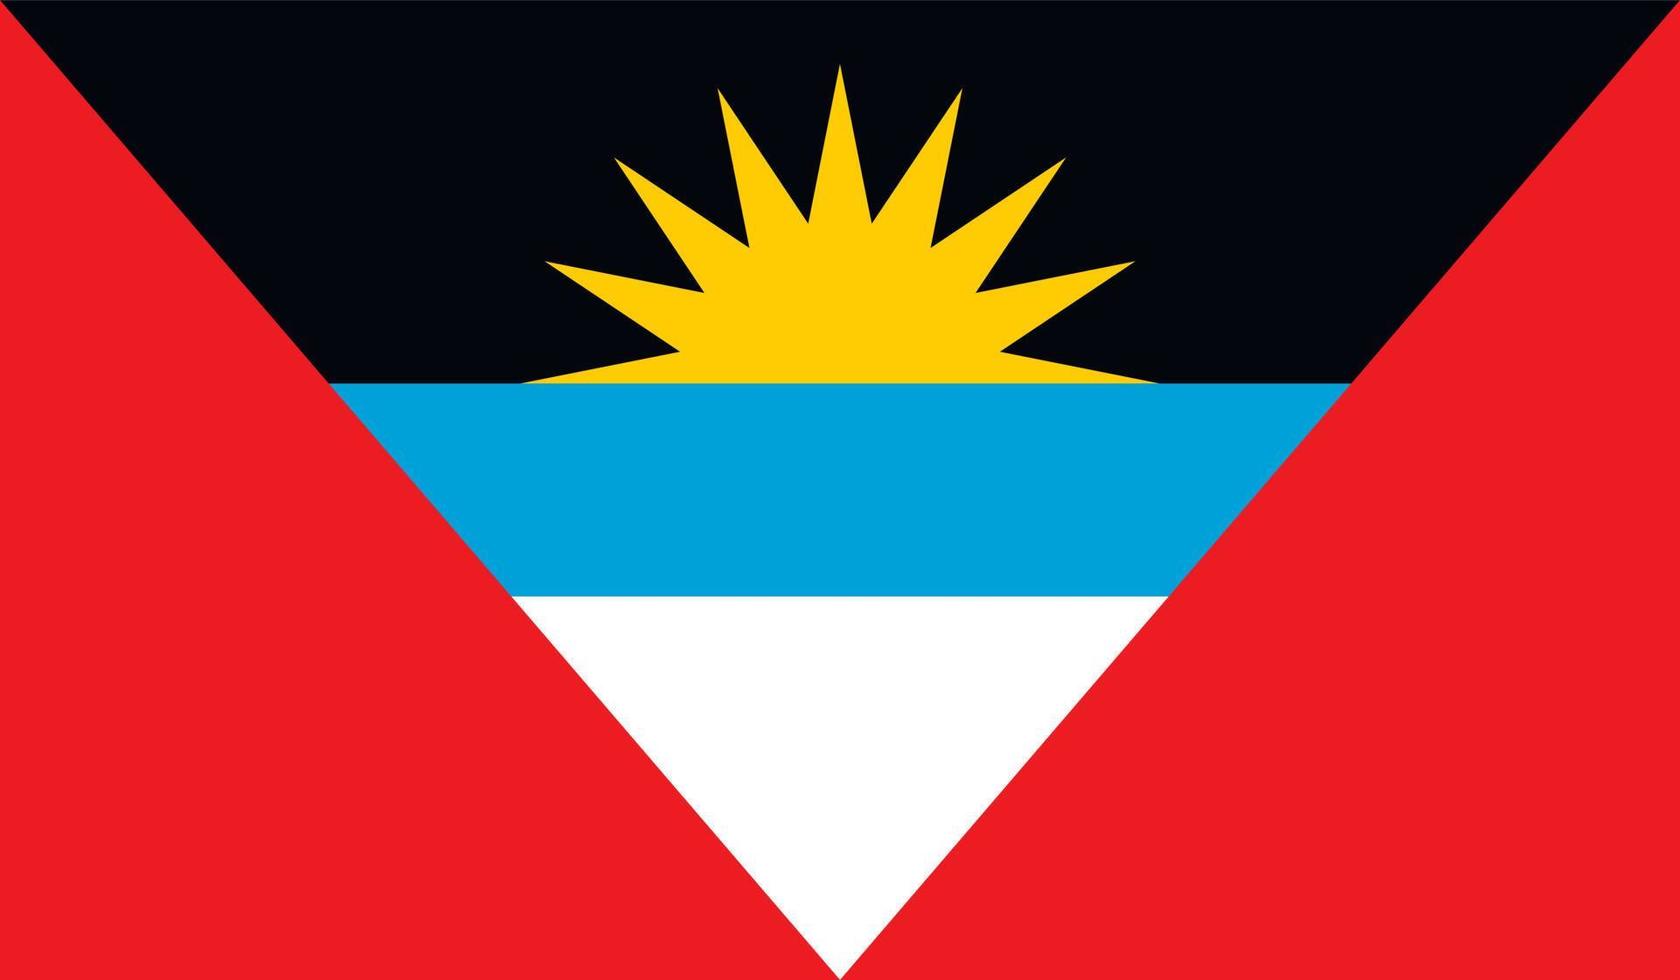 Antigua and Barbuda flag image vector